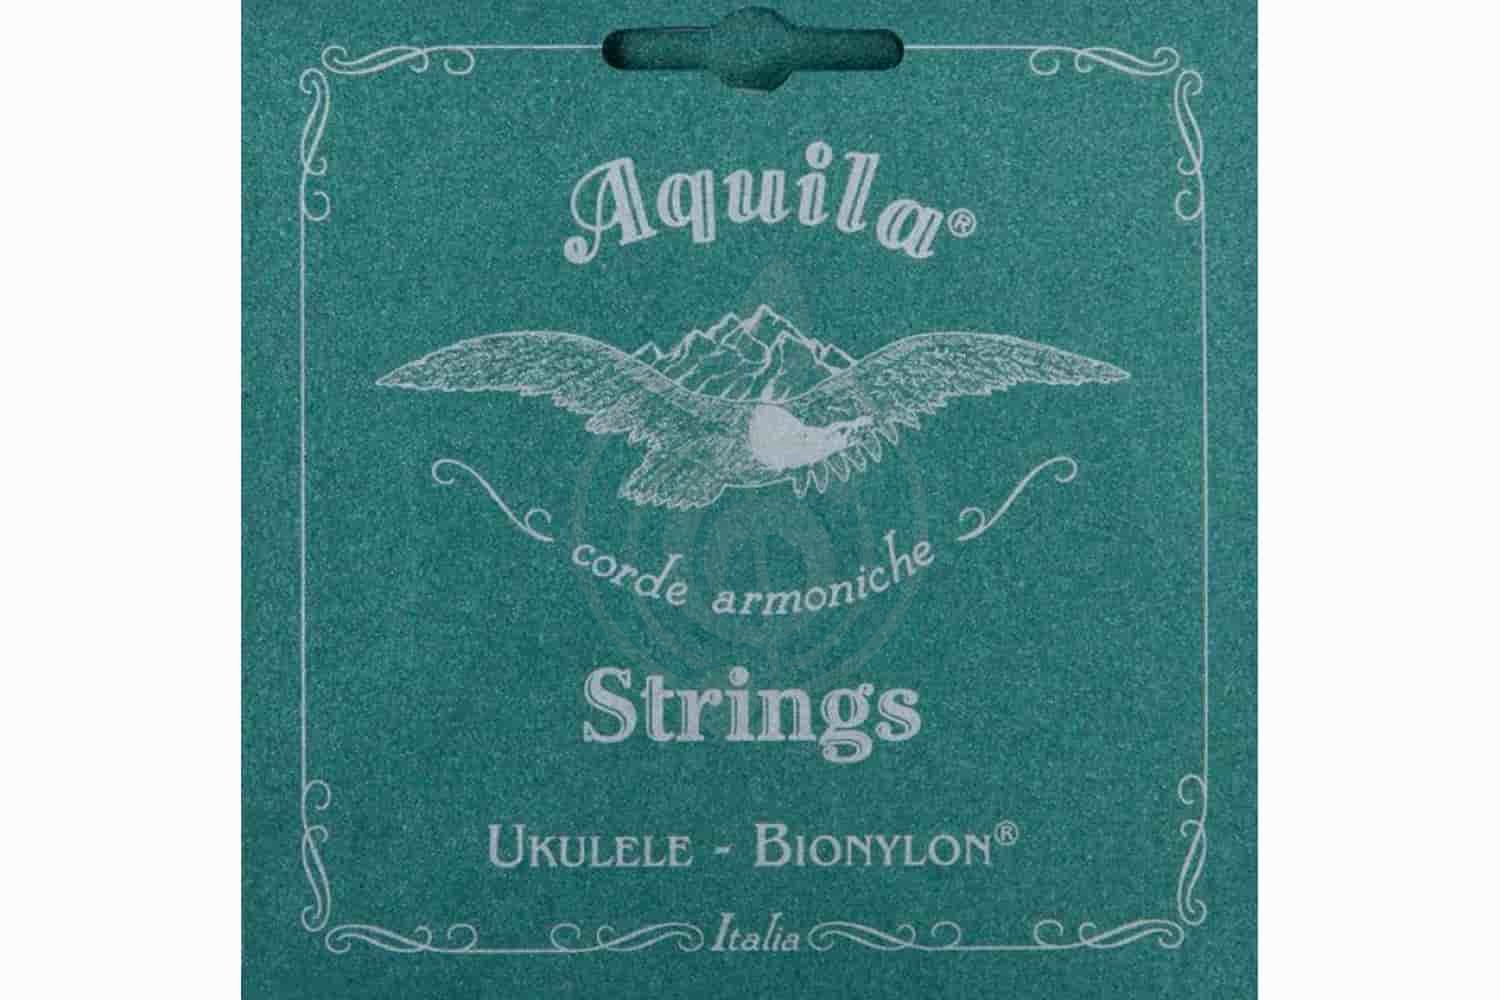 Струны для укулеле сопрано Струны для укулеле сопрано Aquila AQUILA 6U SINGLE - Струна одиночная для укулеле сопрано 6U - фото 1